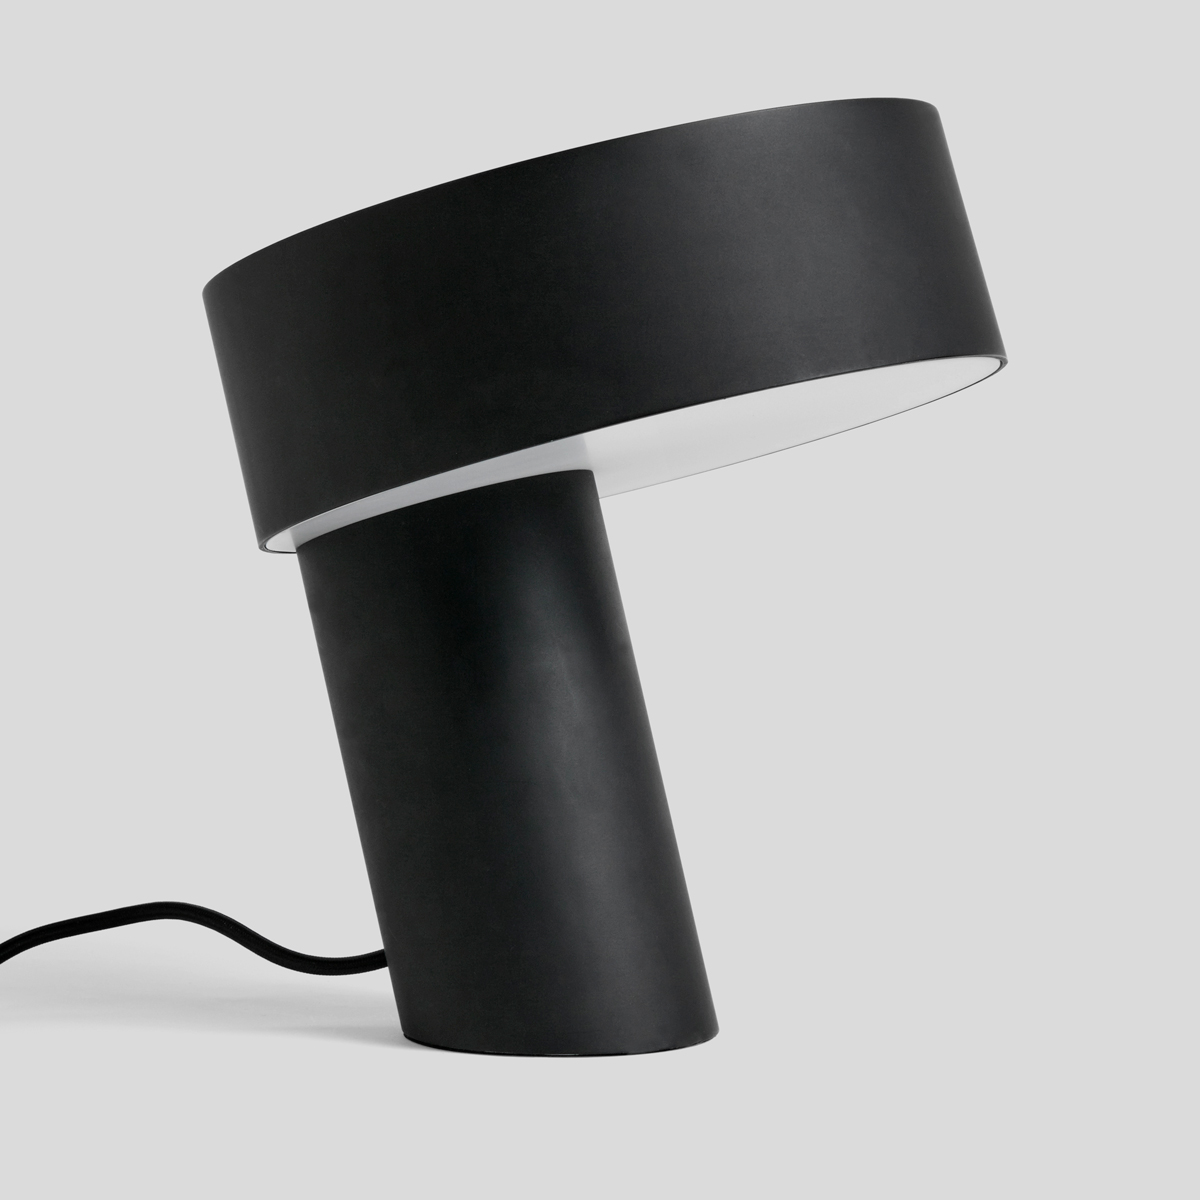 Deze minimalistische tafellamp in het zwart is een design item op zich. 